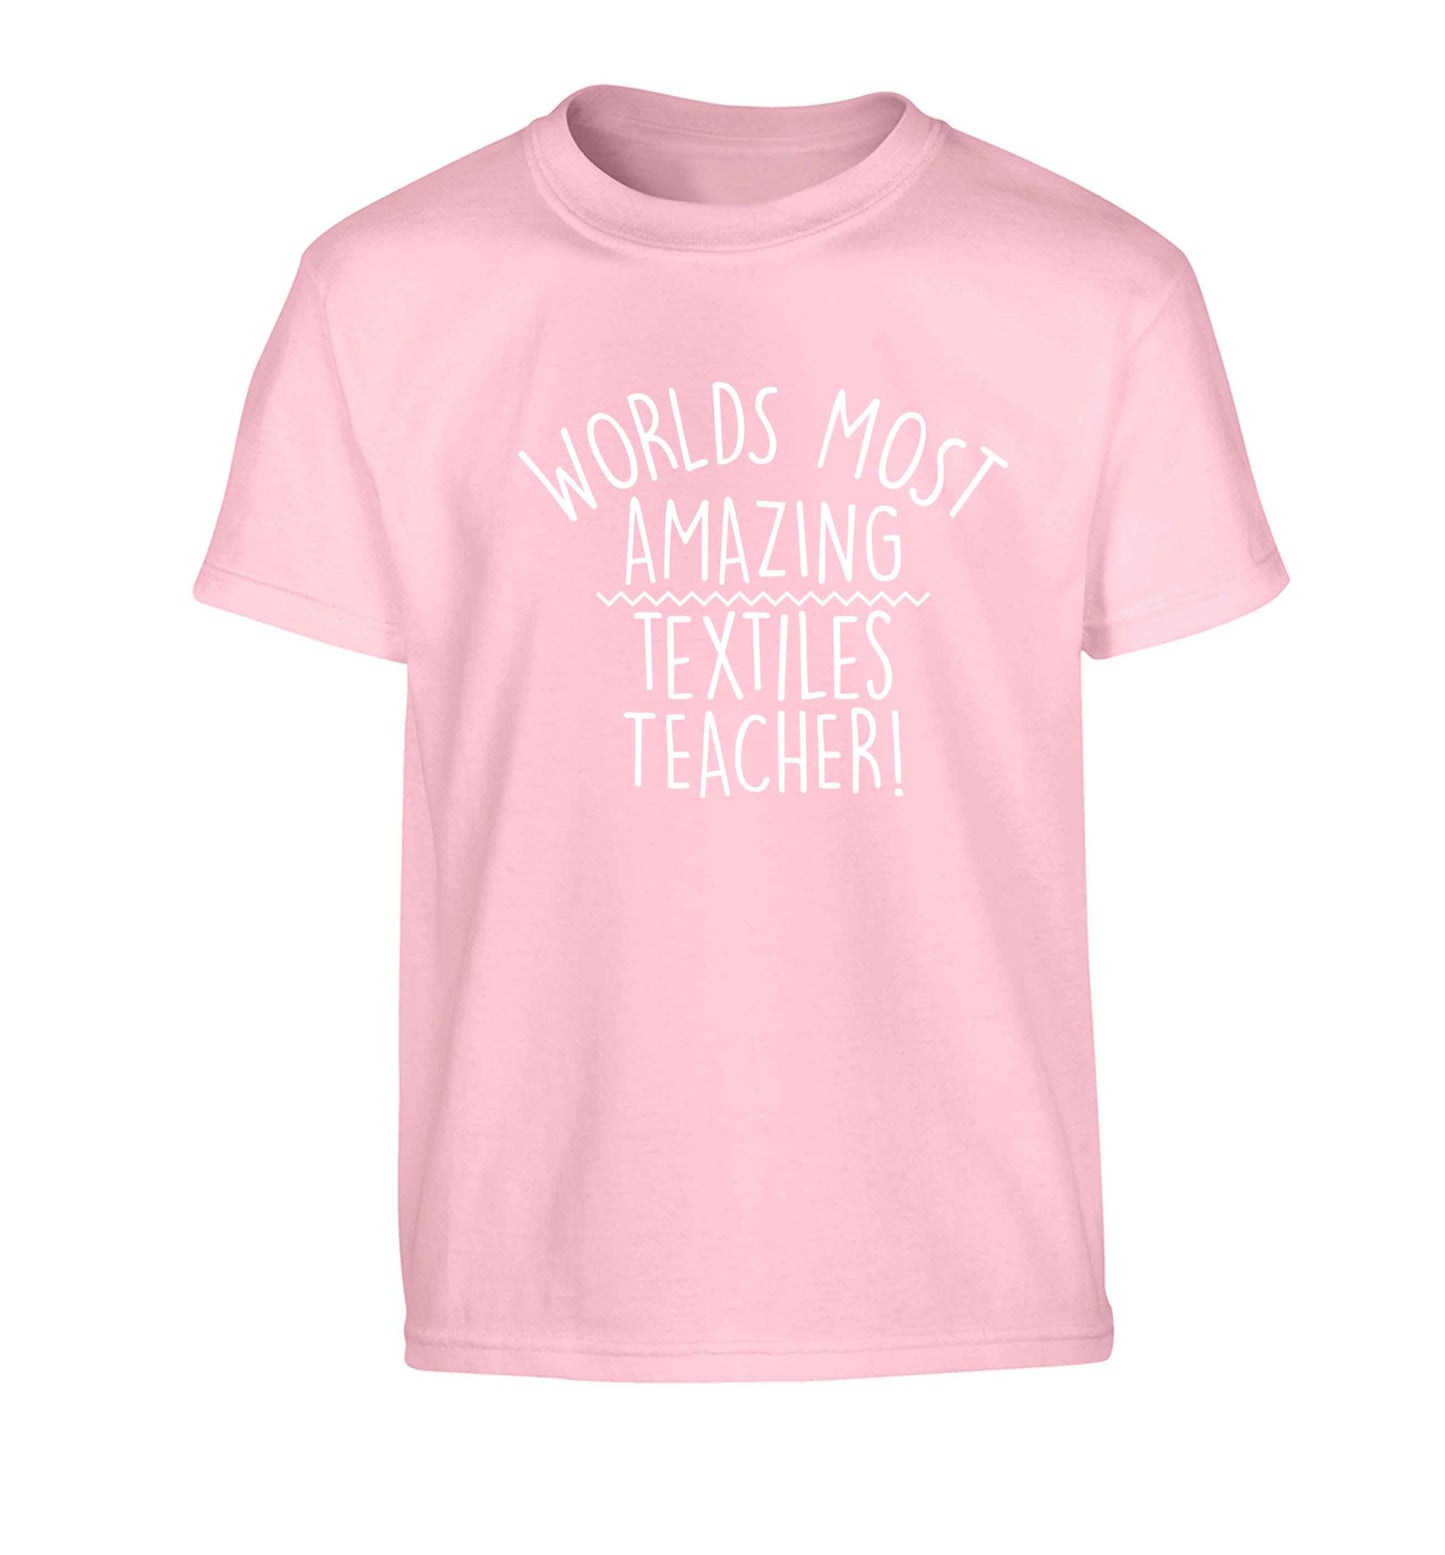 Worlds most amazing textiles teacher Children's light pink Tshirt 12-13 Years